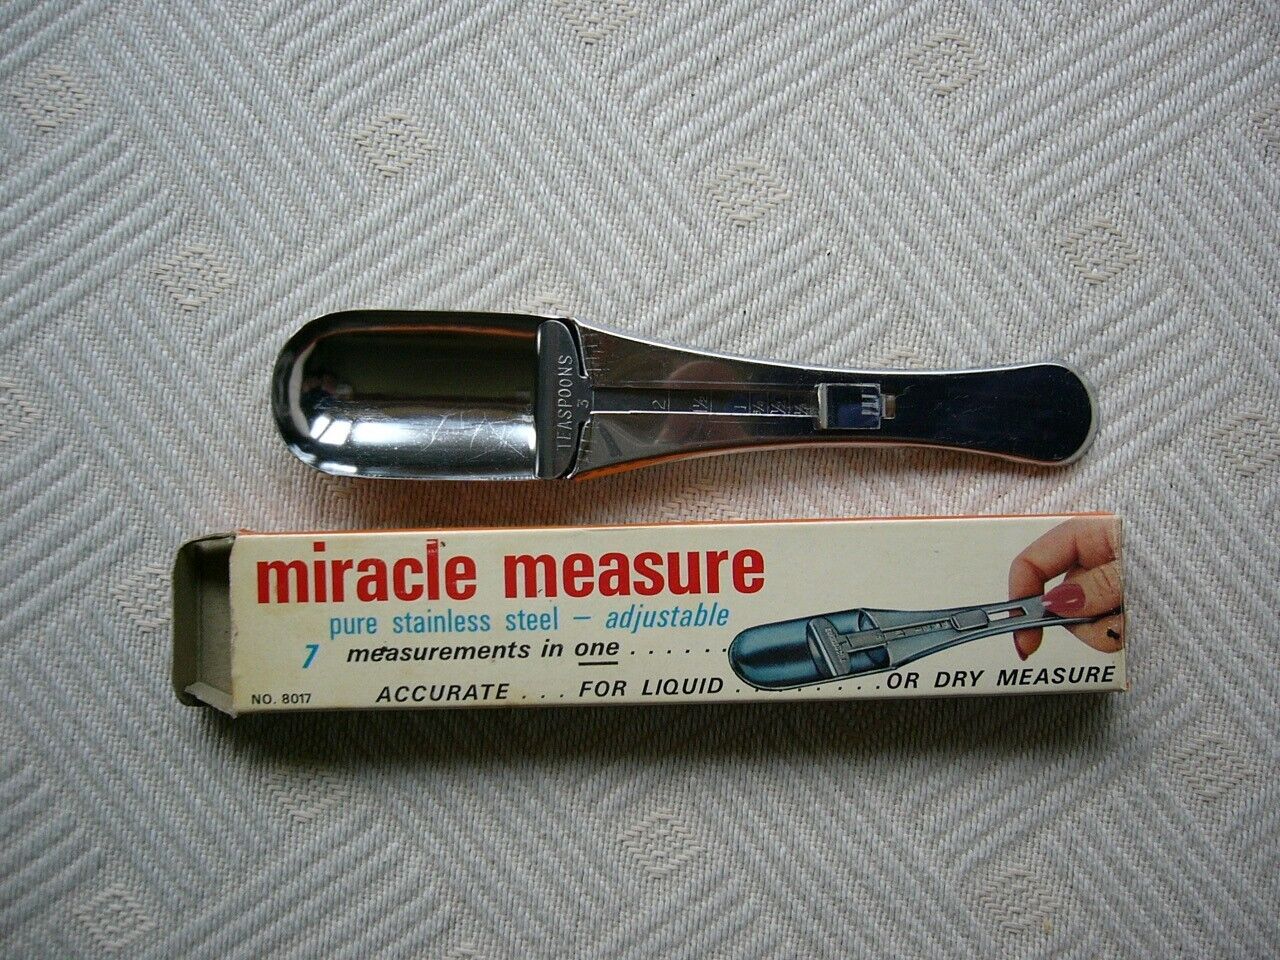 Vintage Miracle Measure Stainless Adjustable Measuring Spoon in Box UNUSED